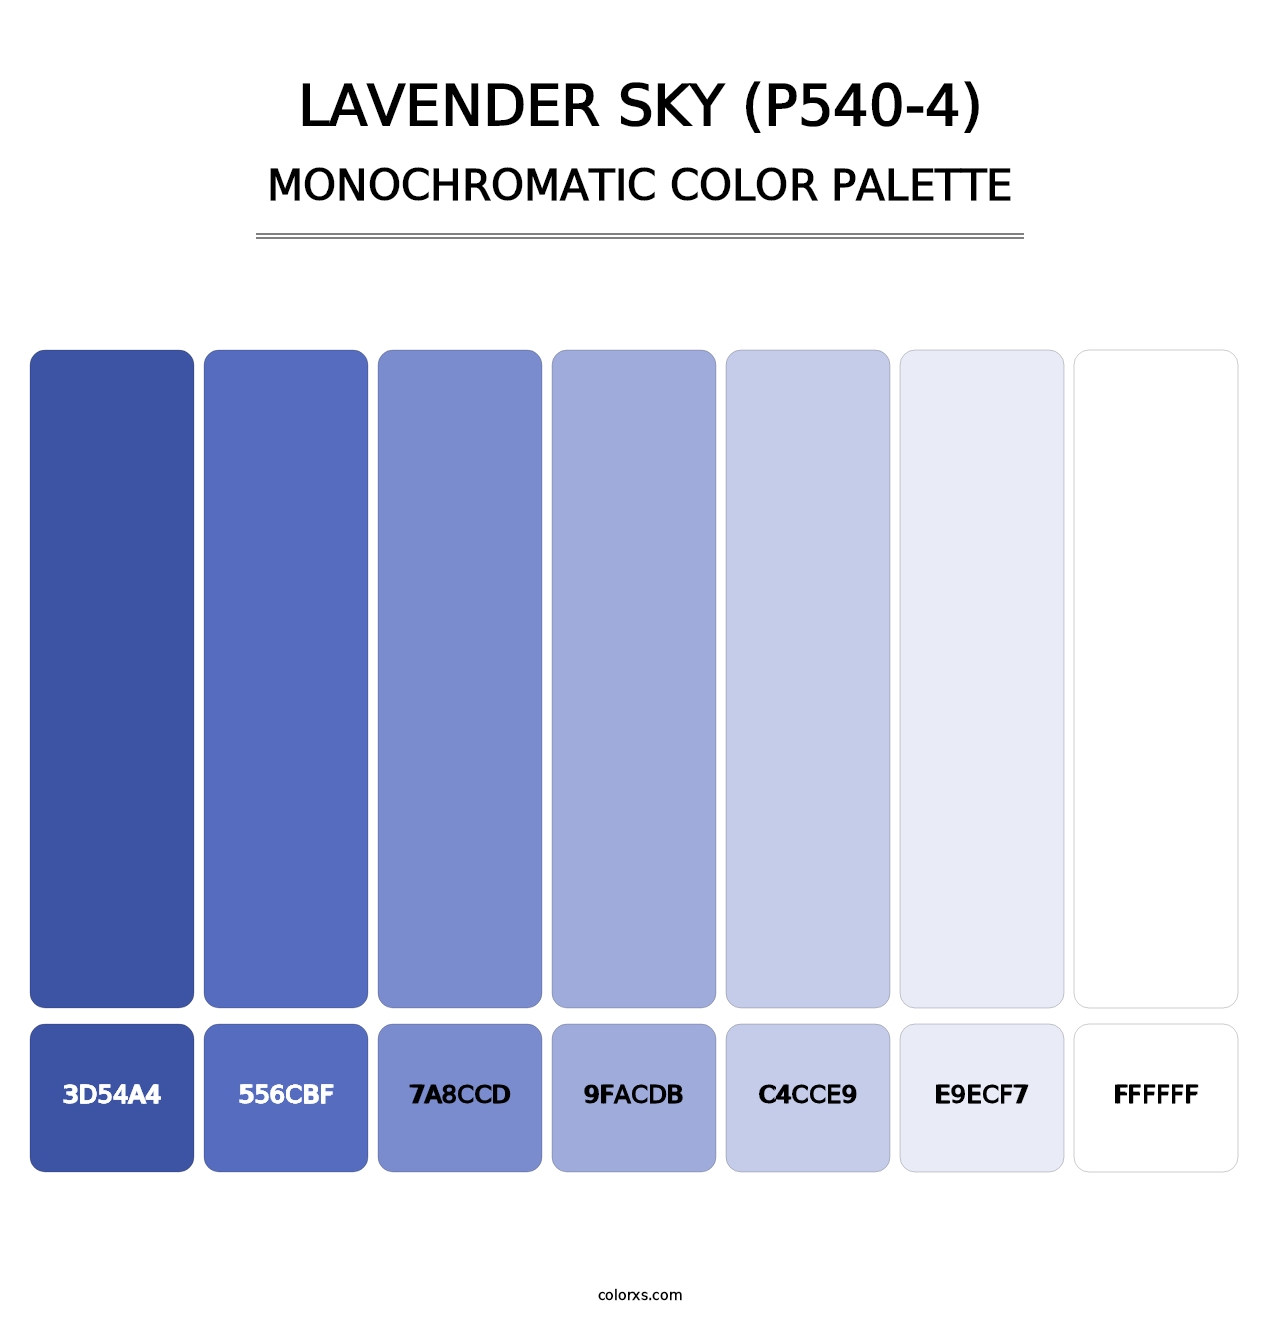 Lavender Sky (P540-4) - Monochromatic Color Palette